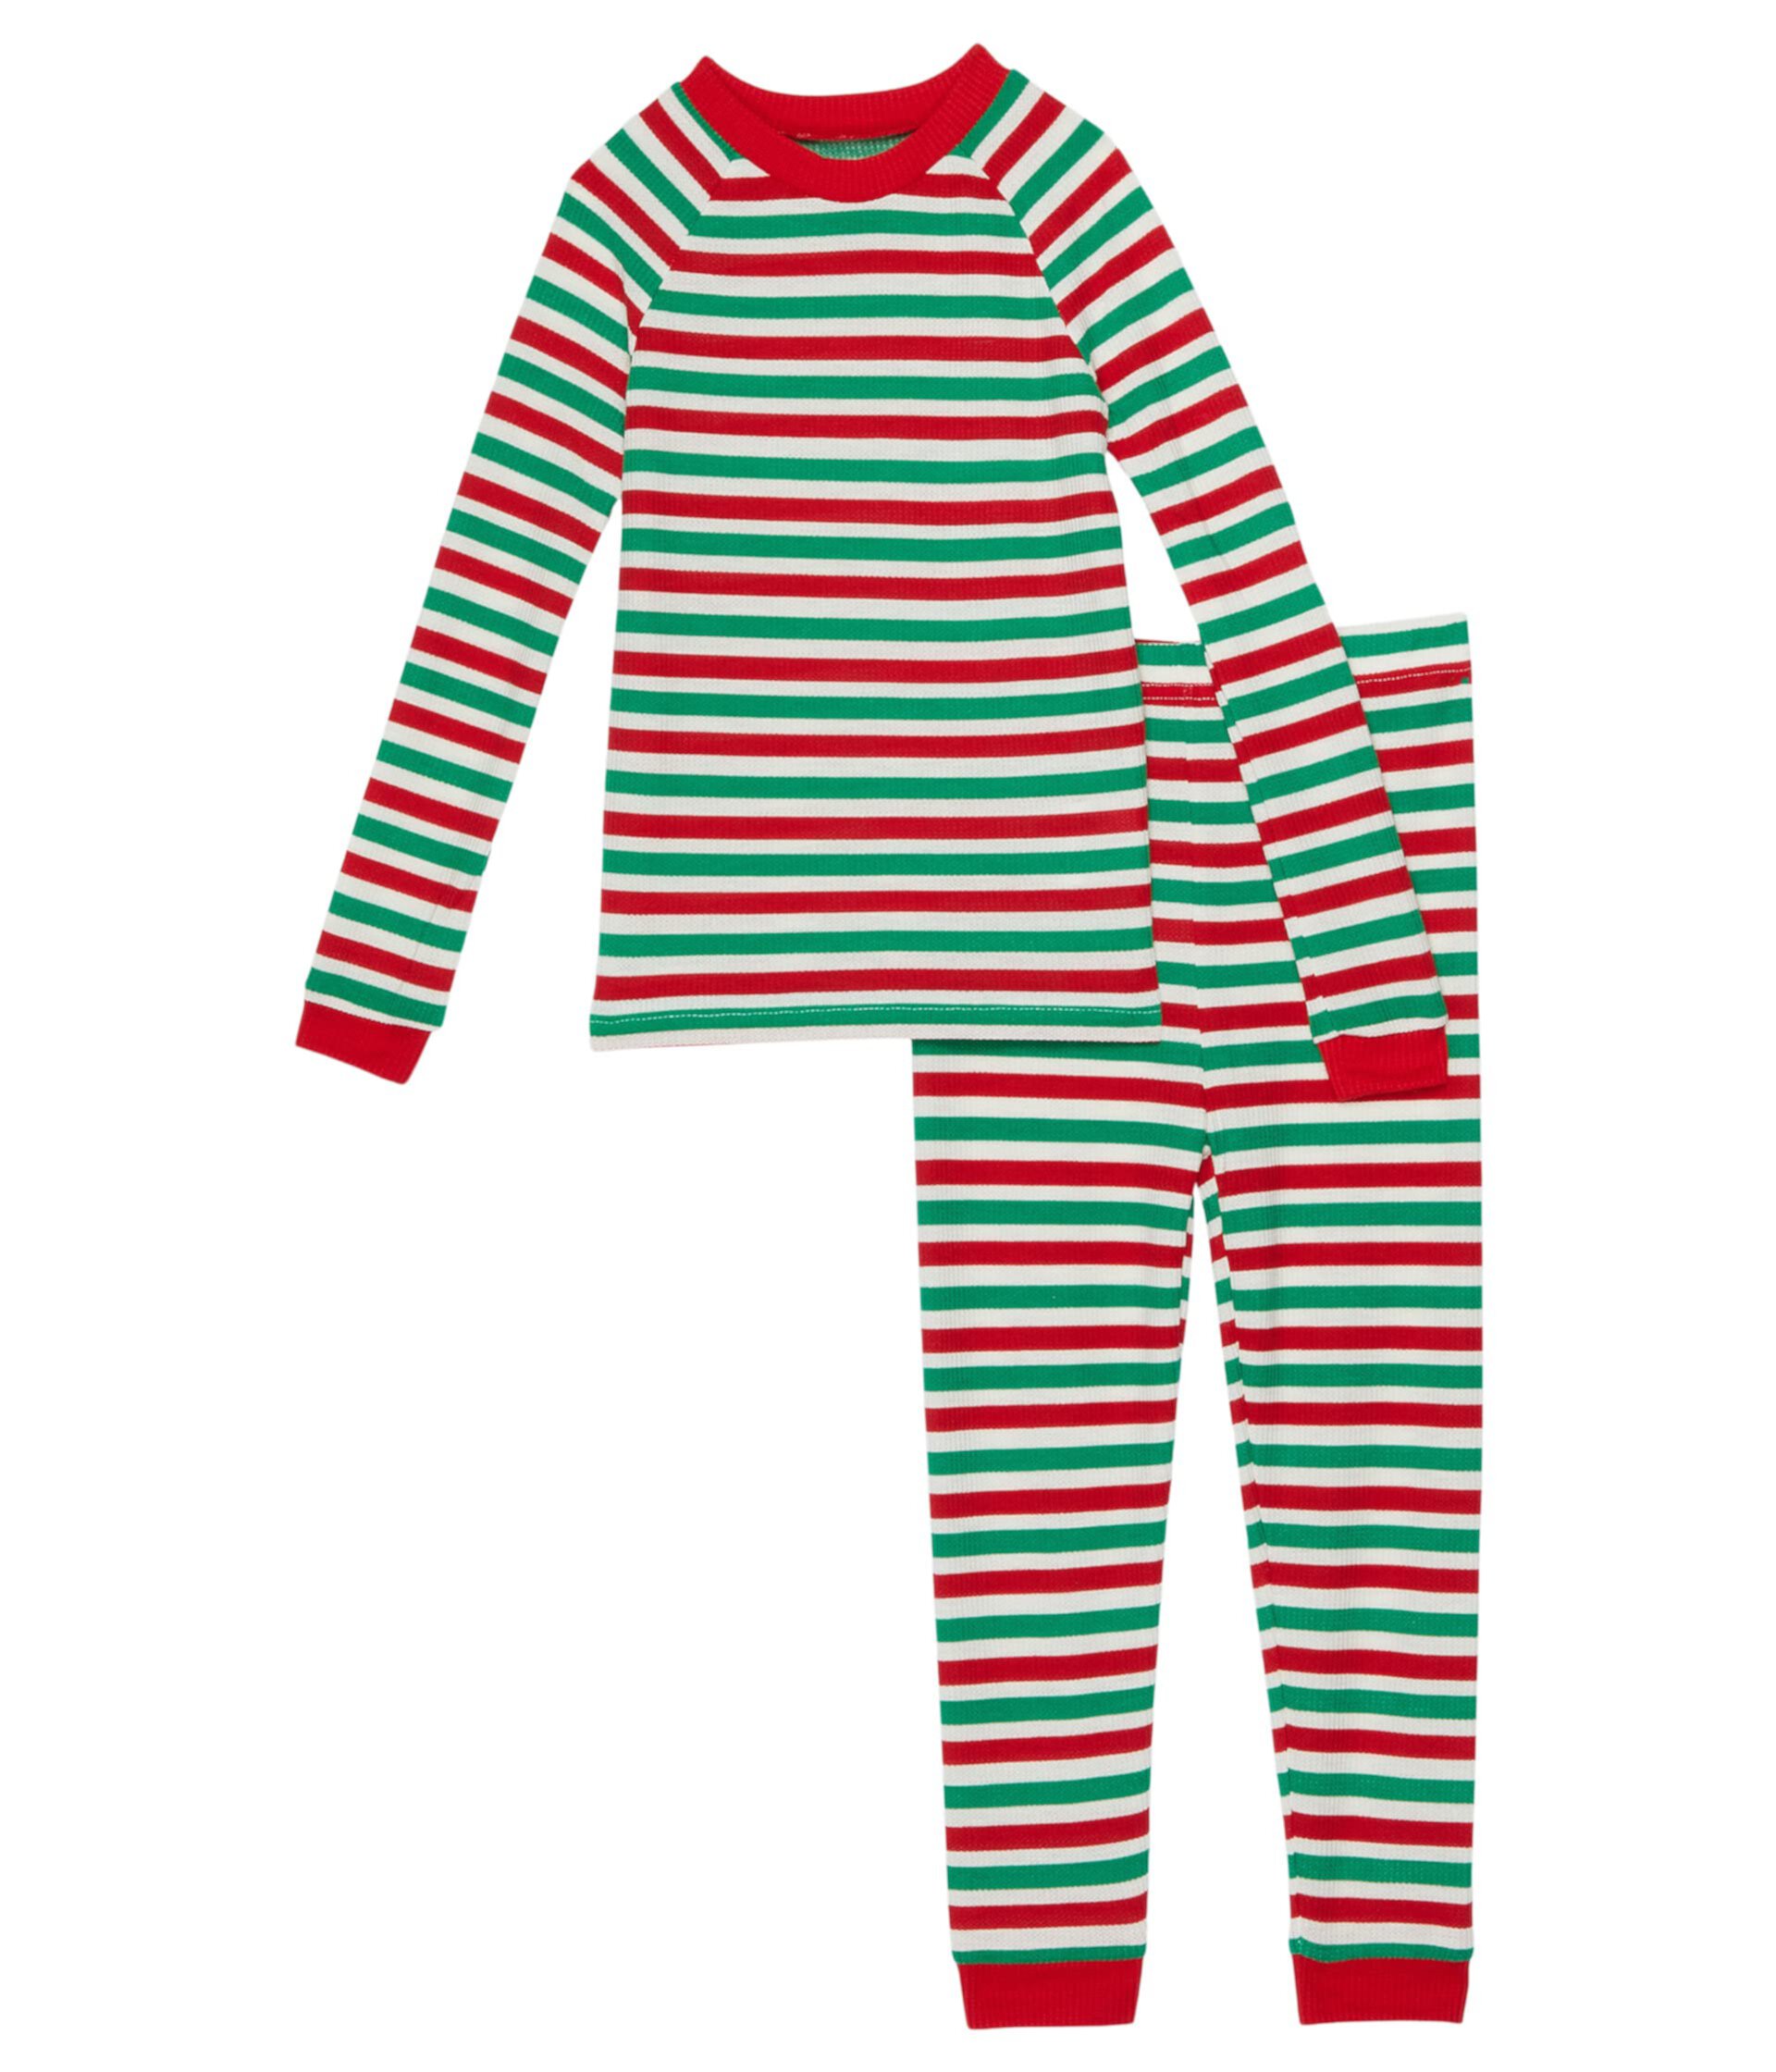 Длинная пижама Team ELF (маленькие/большие дети) Pajamarama